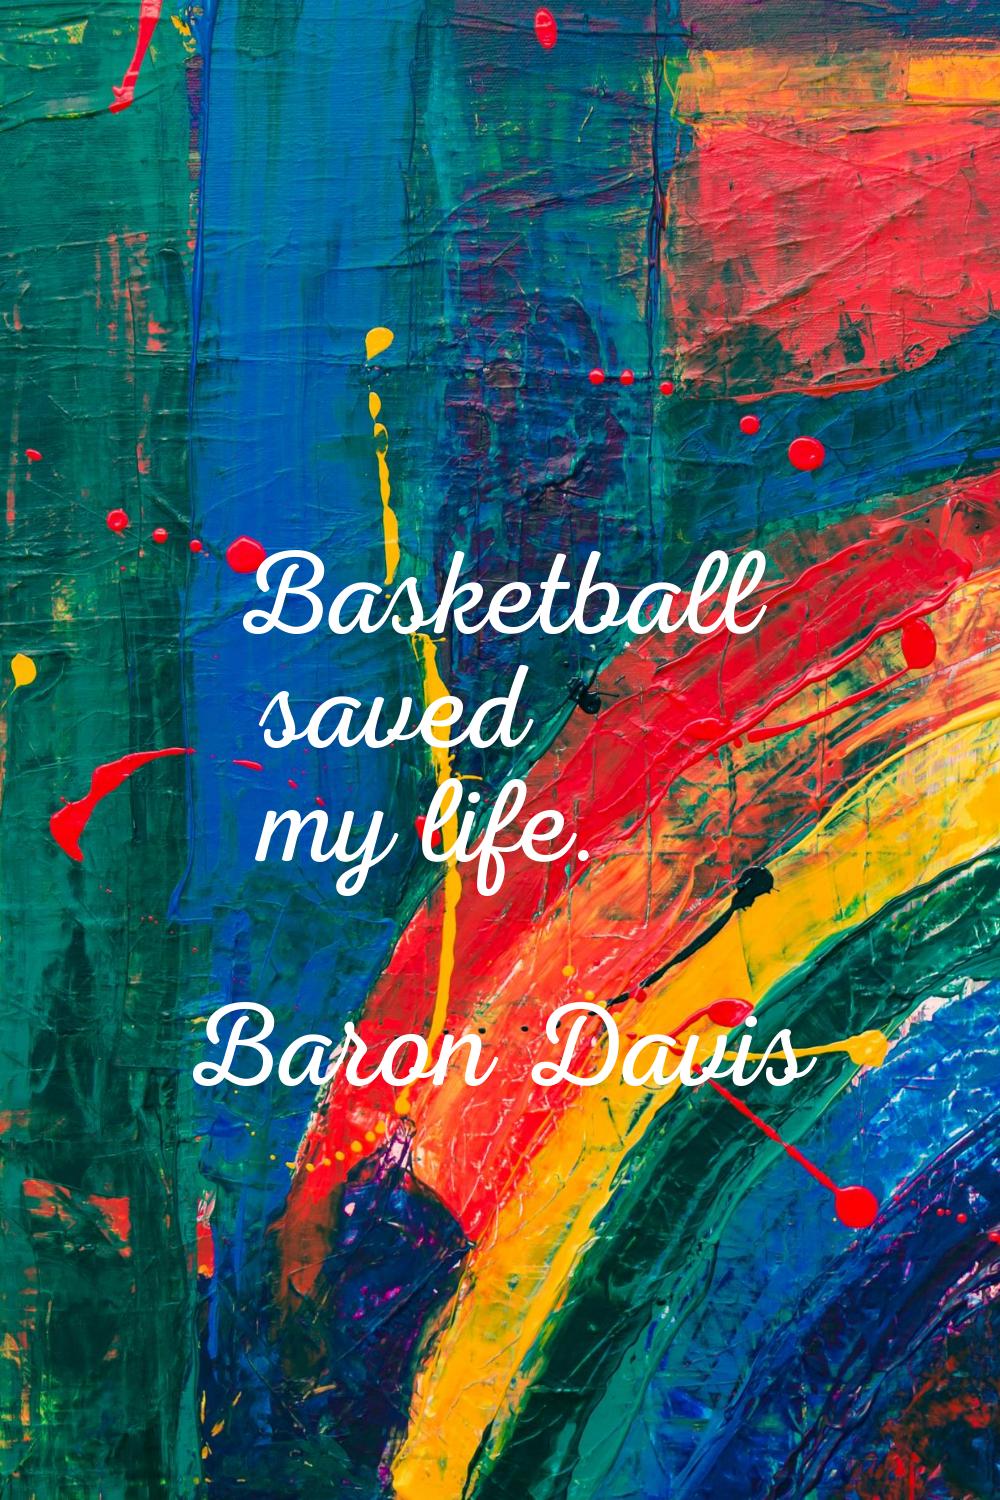 Basketball saved my life.